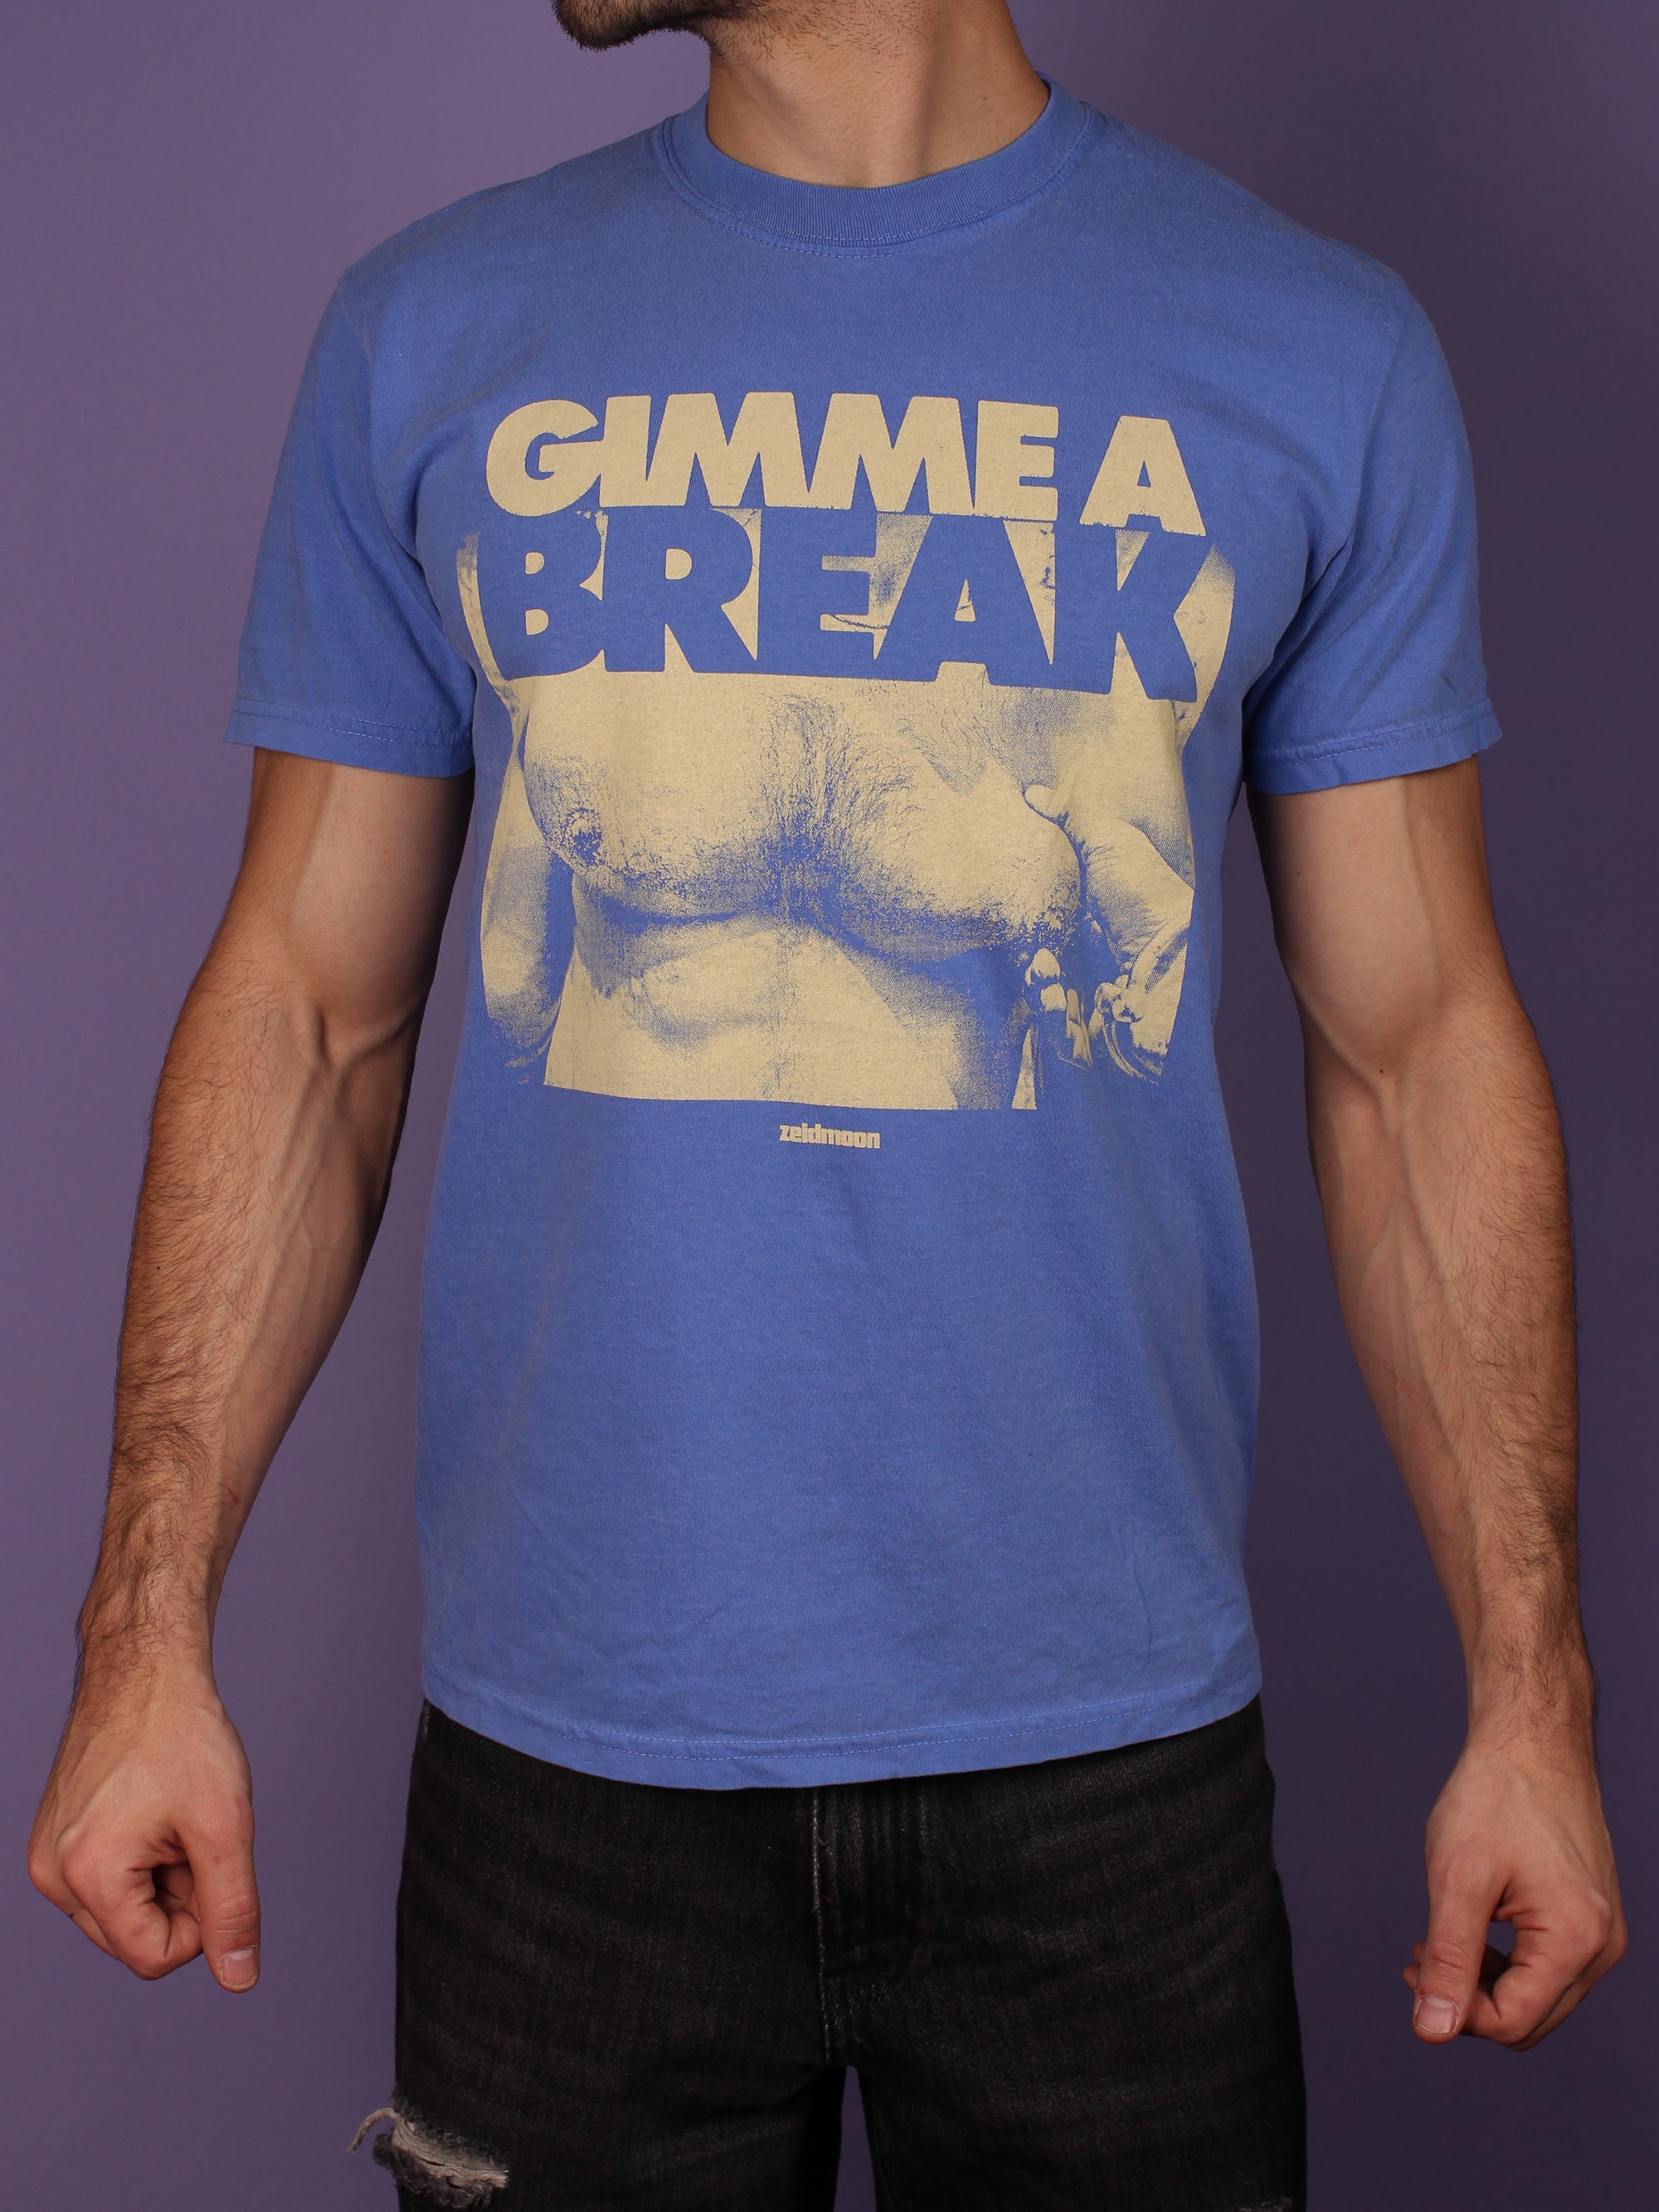 Gimme a Break - T Shirt